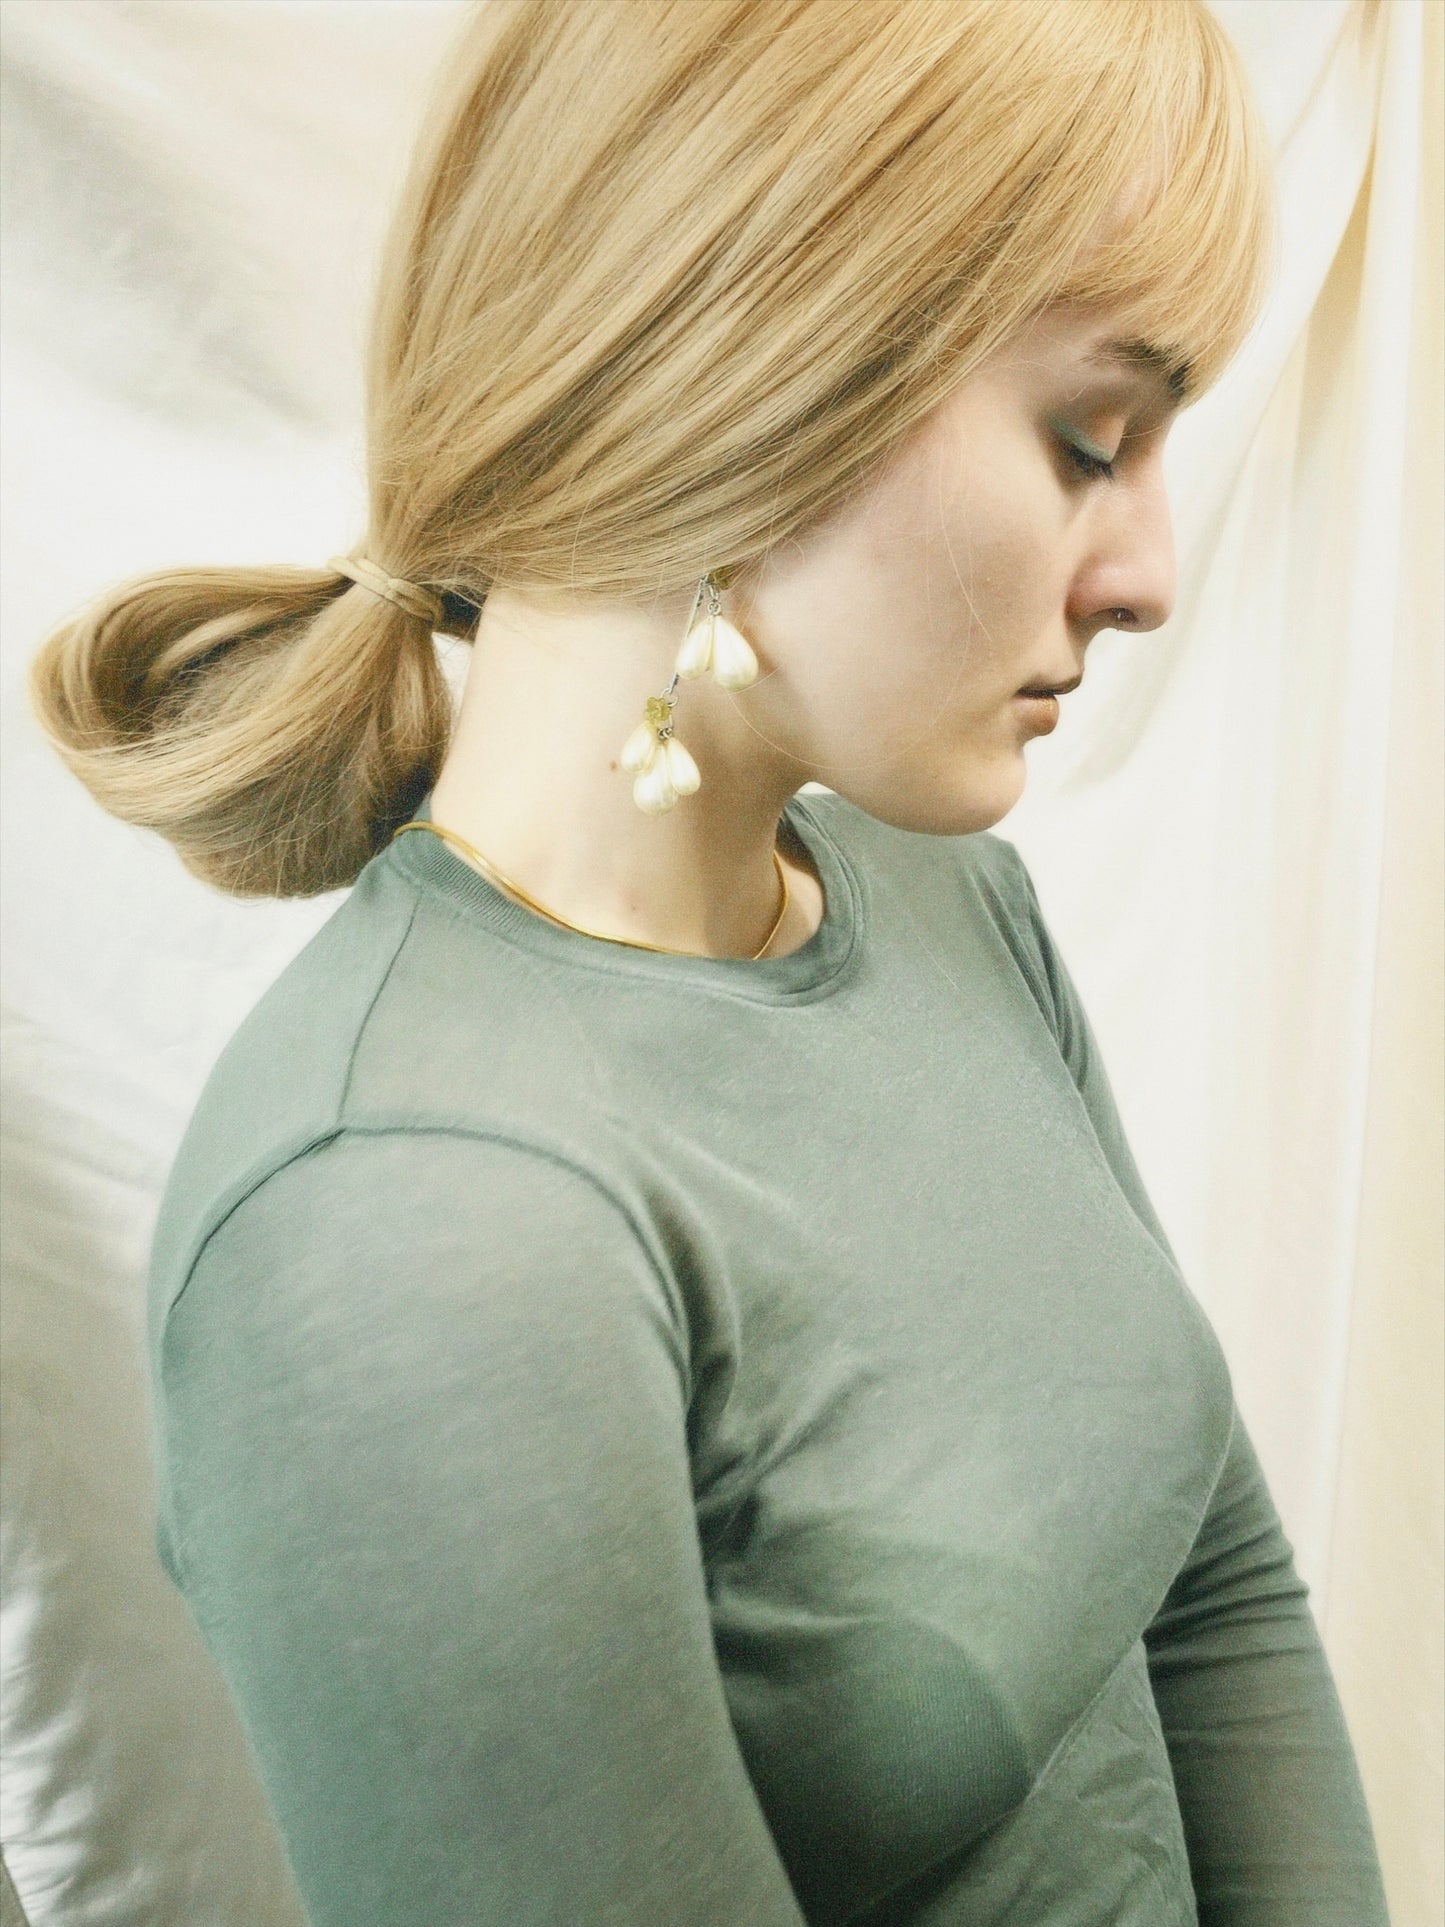 Pistachio earrings